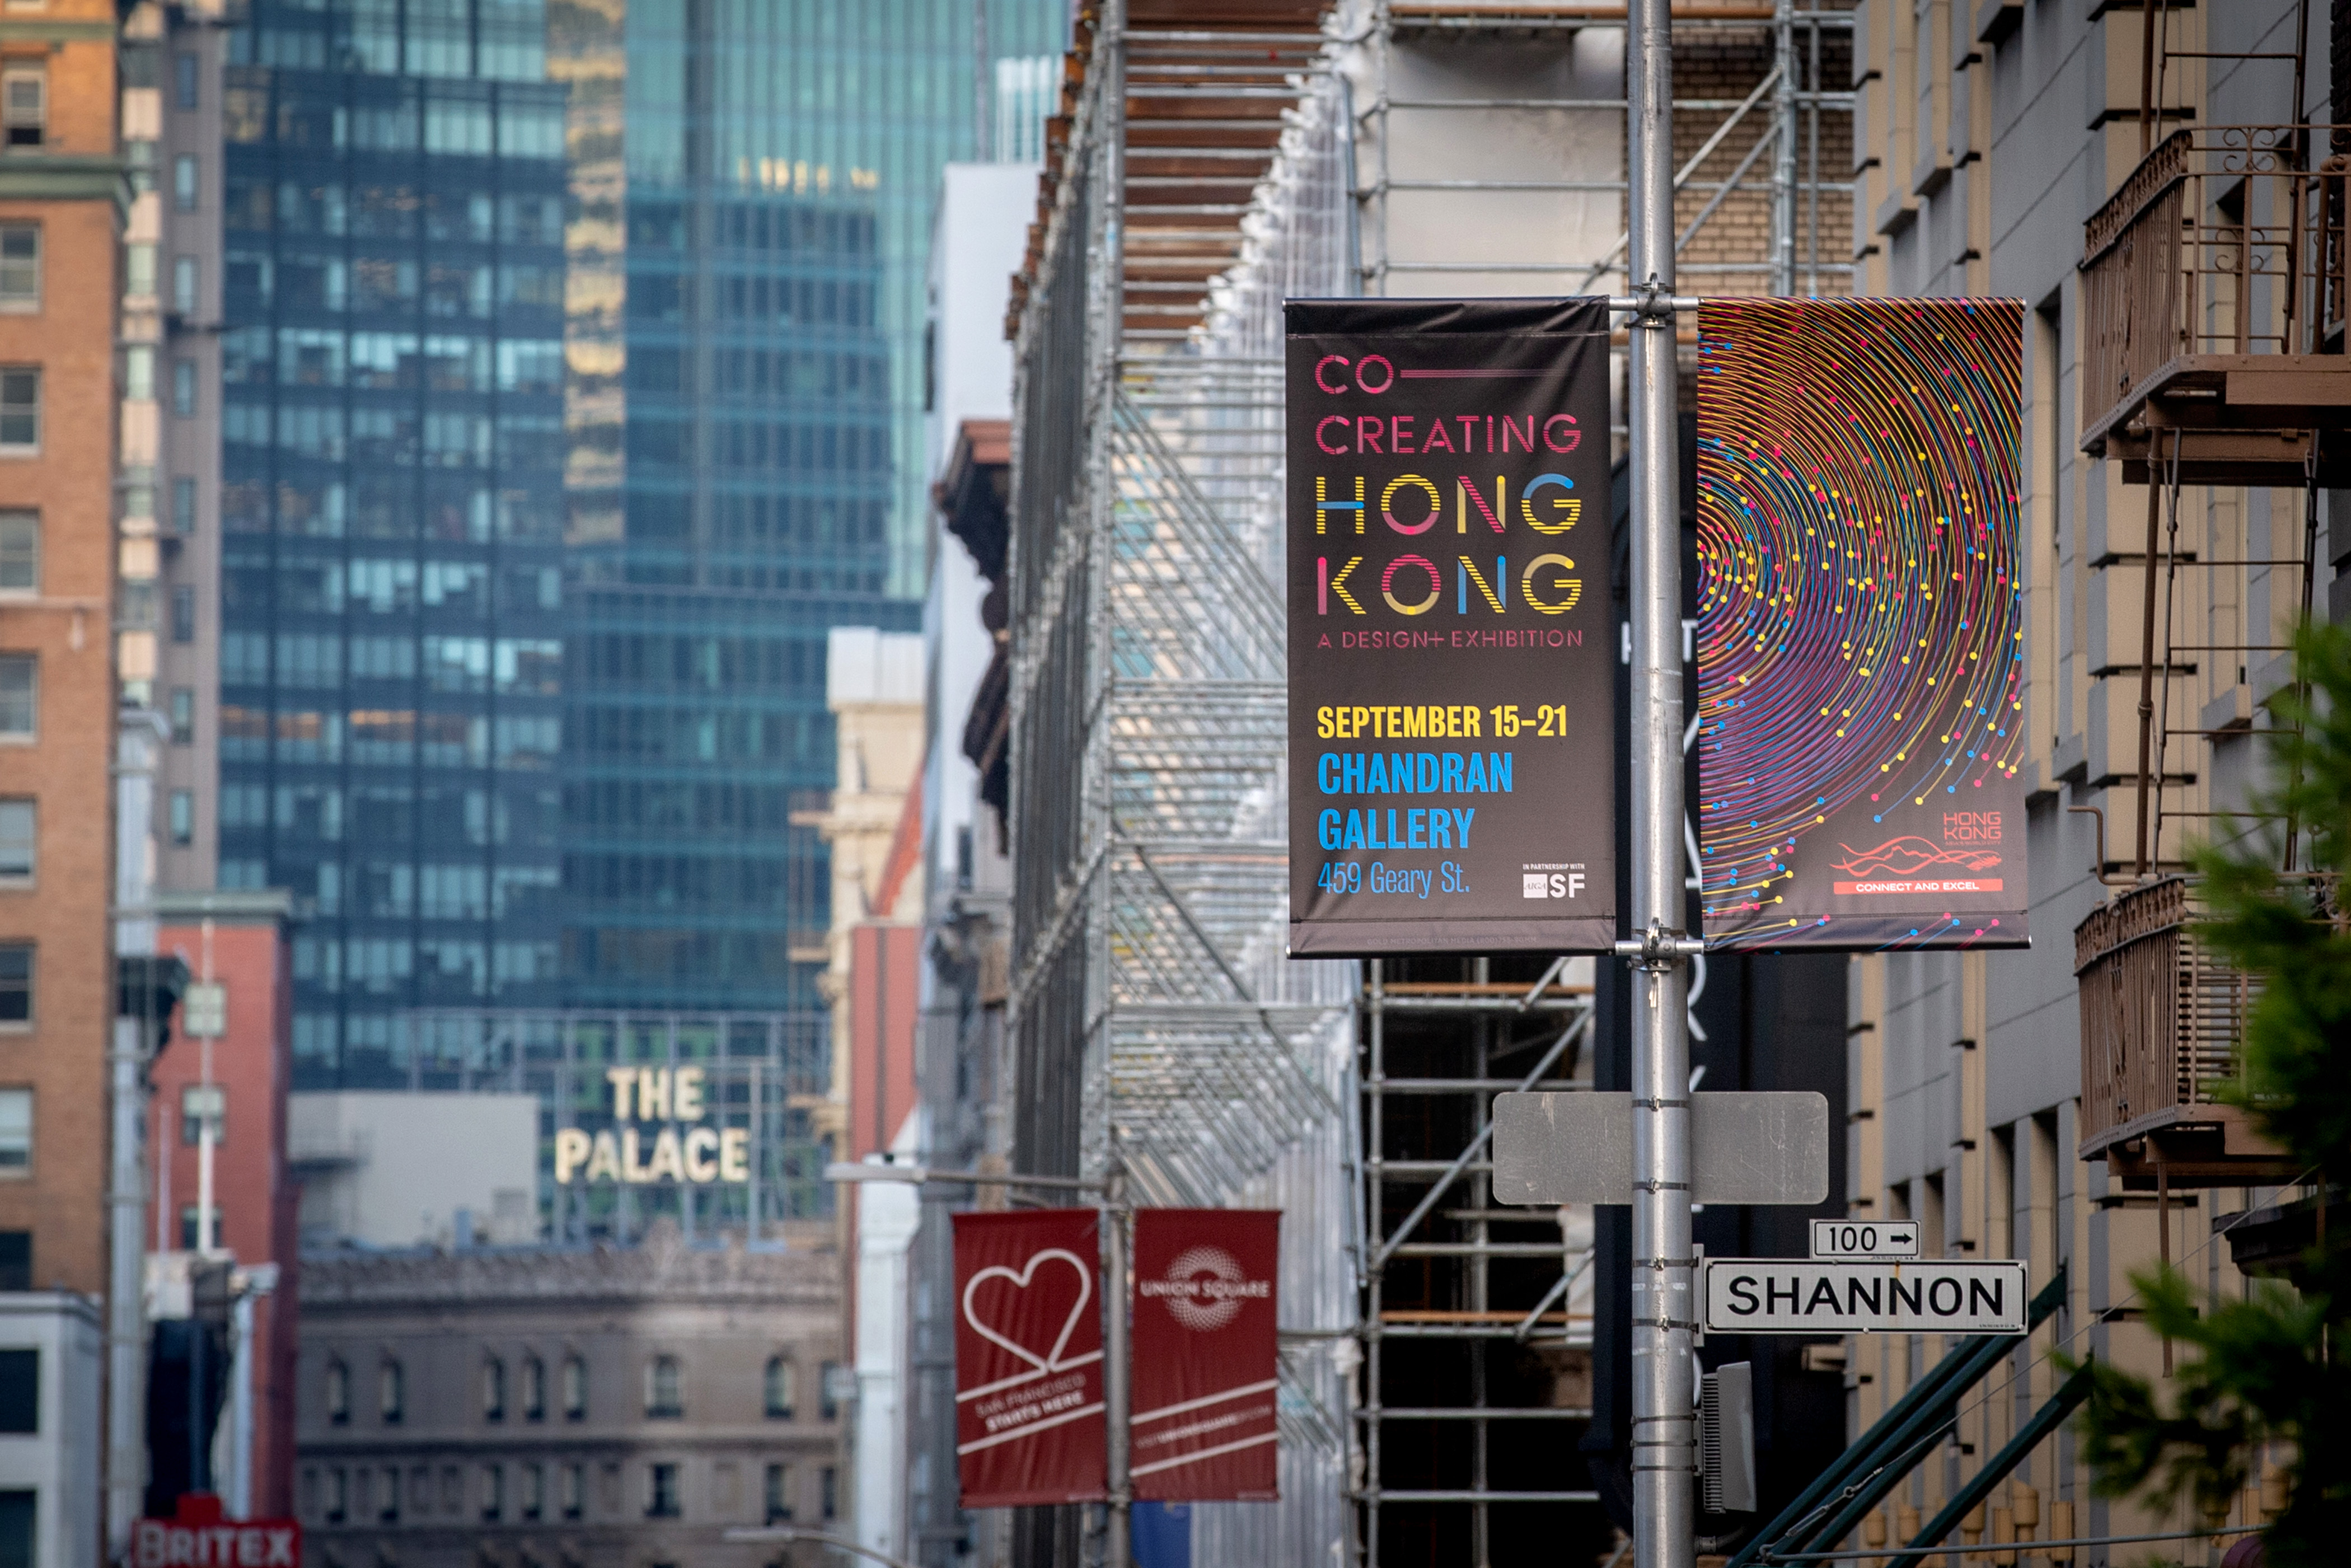 Co Creating Hong Kong Design Exhibition San Francisco - 